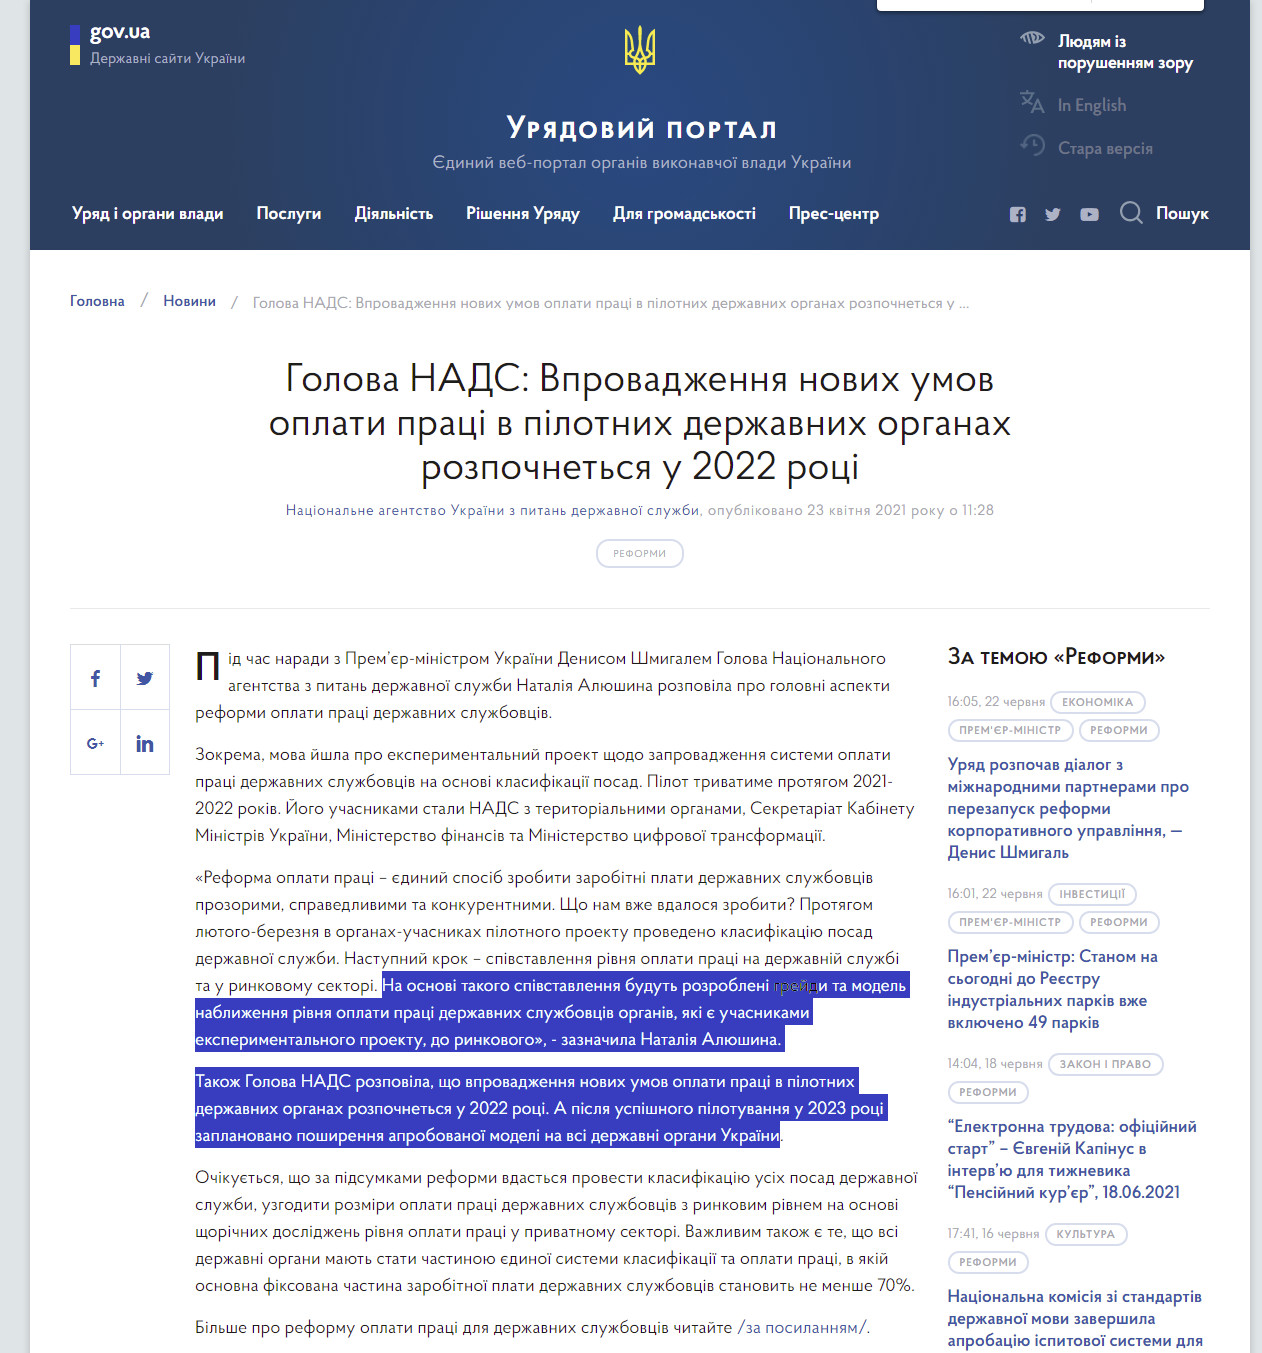 https://www.kmu.gov.ua/news/golova-nads-vprovadzhennya-novih-umov-oplati-praci-v-pilotnih-derzhavnih-organah-rozpochnetsya-u-2022-roci